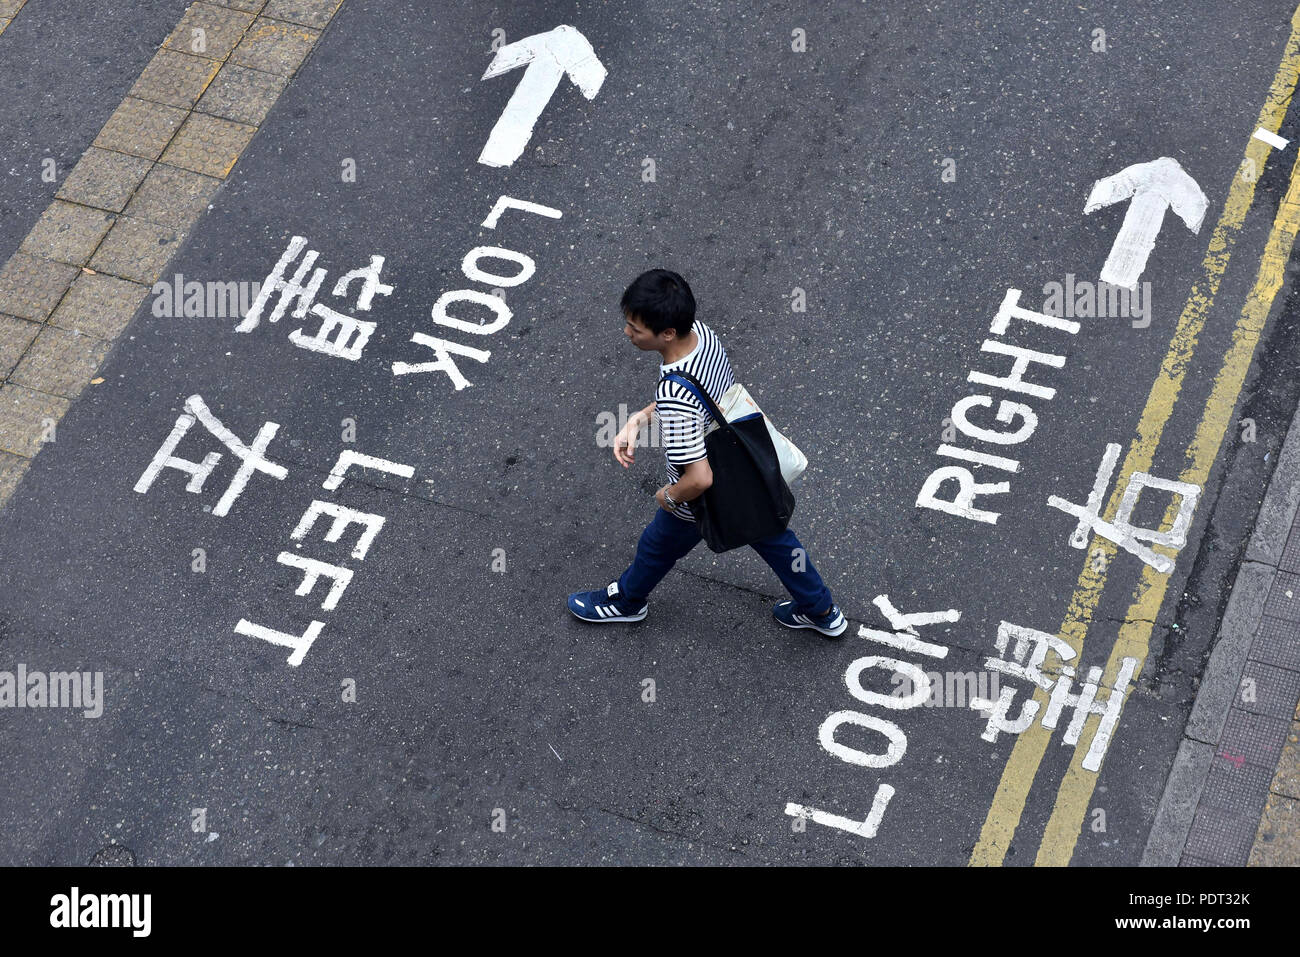 Cina: Hong Kong. Attraversamento pedonale di una strada fuori dell'crosswalks, con la segnaletica stradale in inglese e cinese: "Guardare a destra, guardare a sinistra". Foto Stock